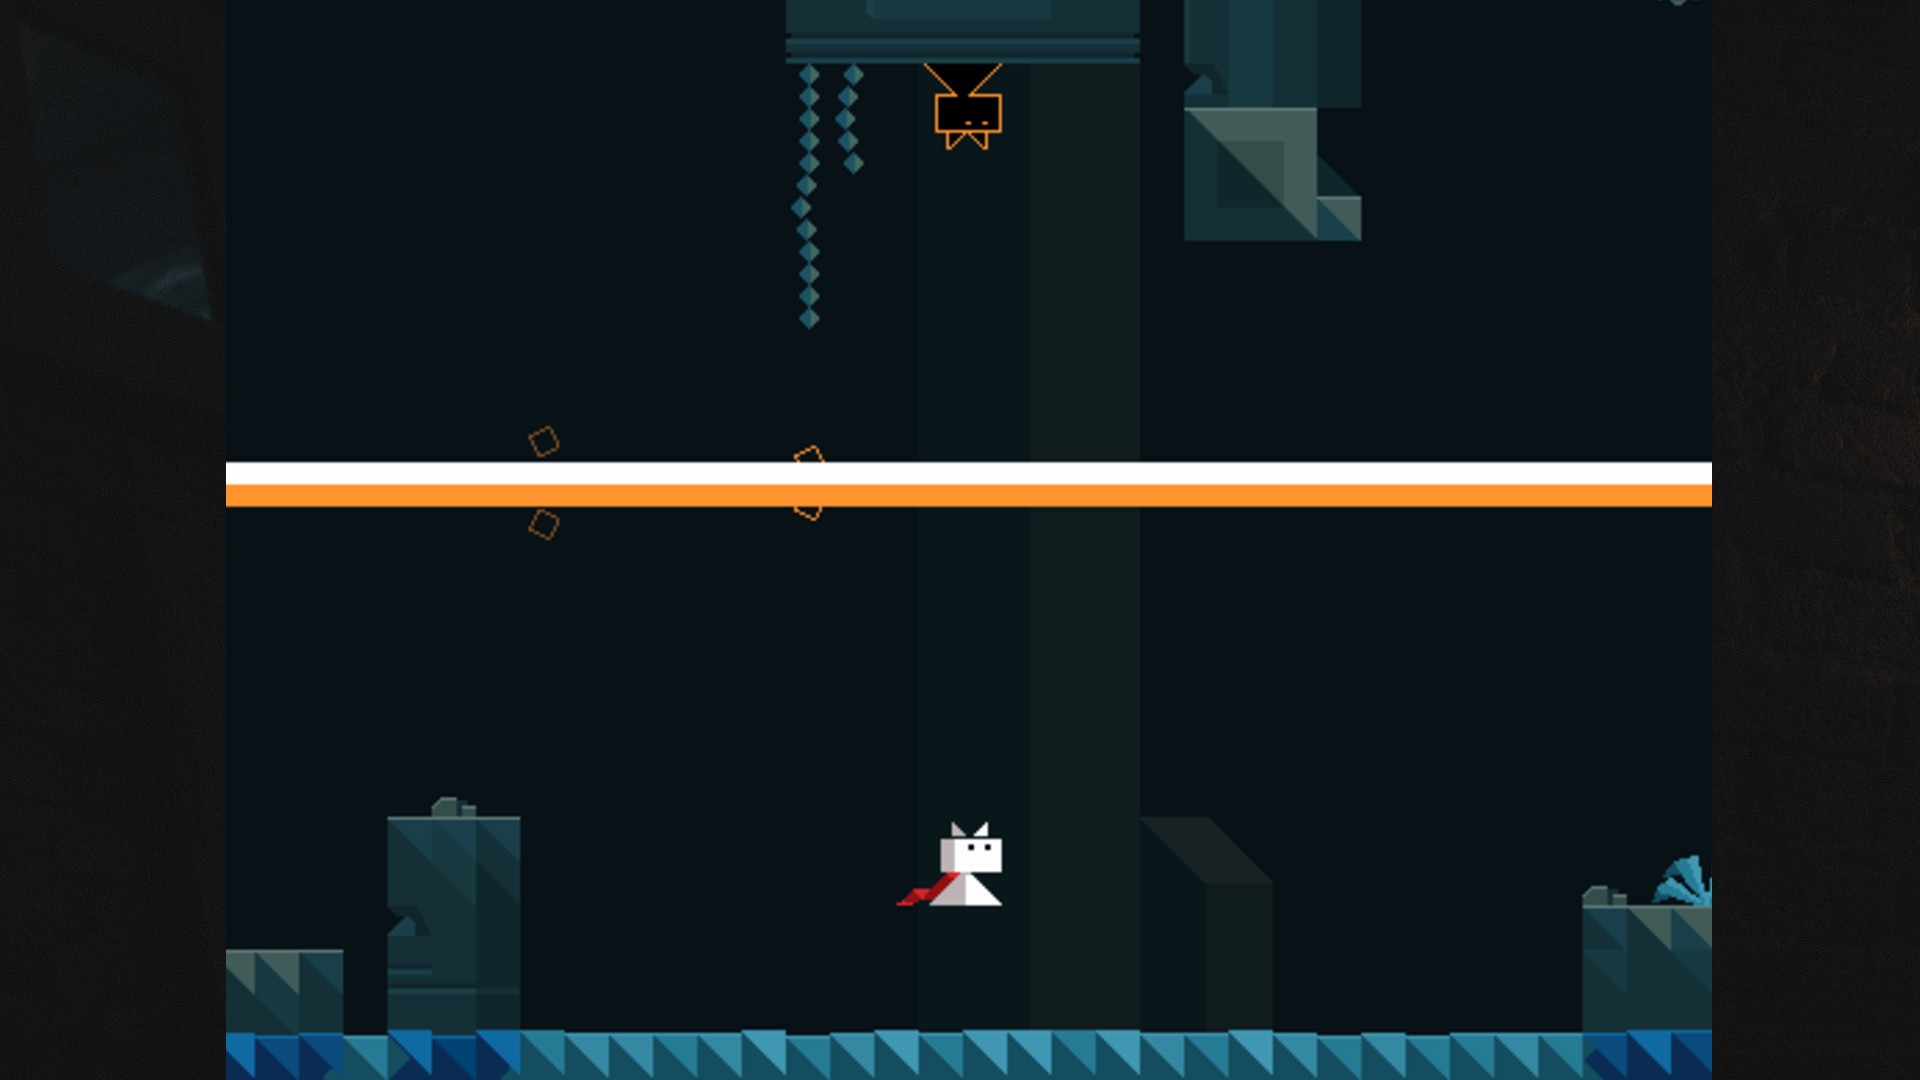 بازی های آنلاین: Ditto. تصویر یک گربه سیاه و سفید را نشان می دهد که از طریق دنیای پیکسل در حال عبور است